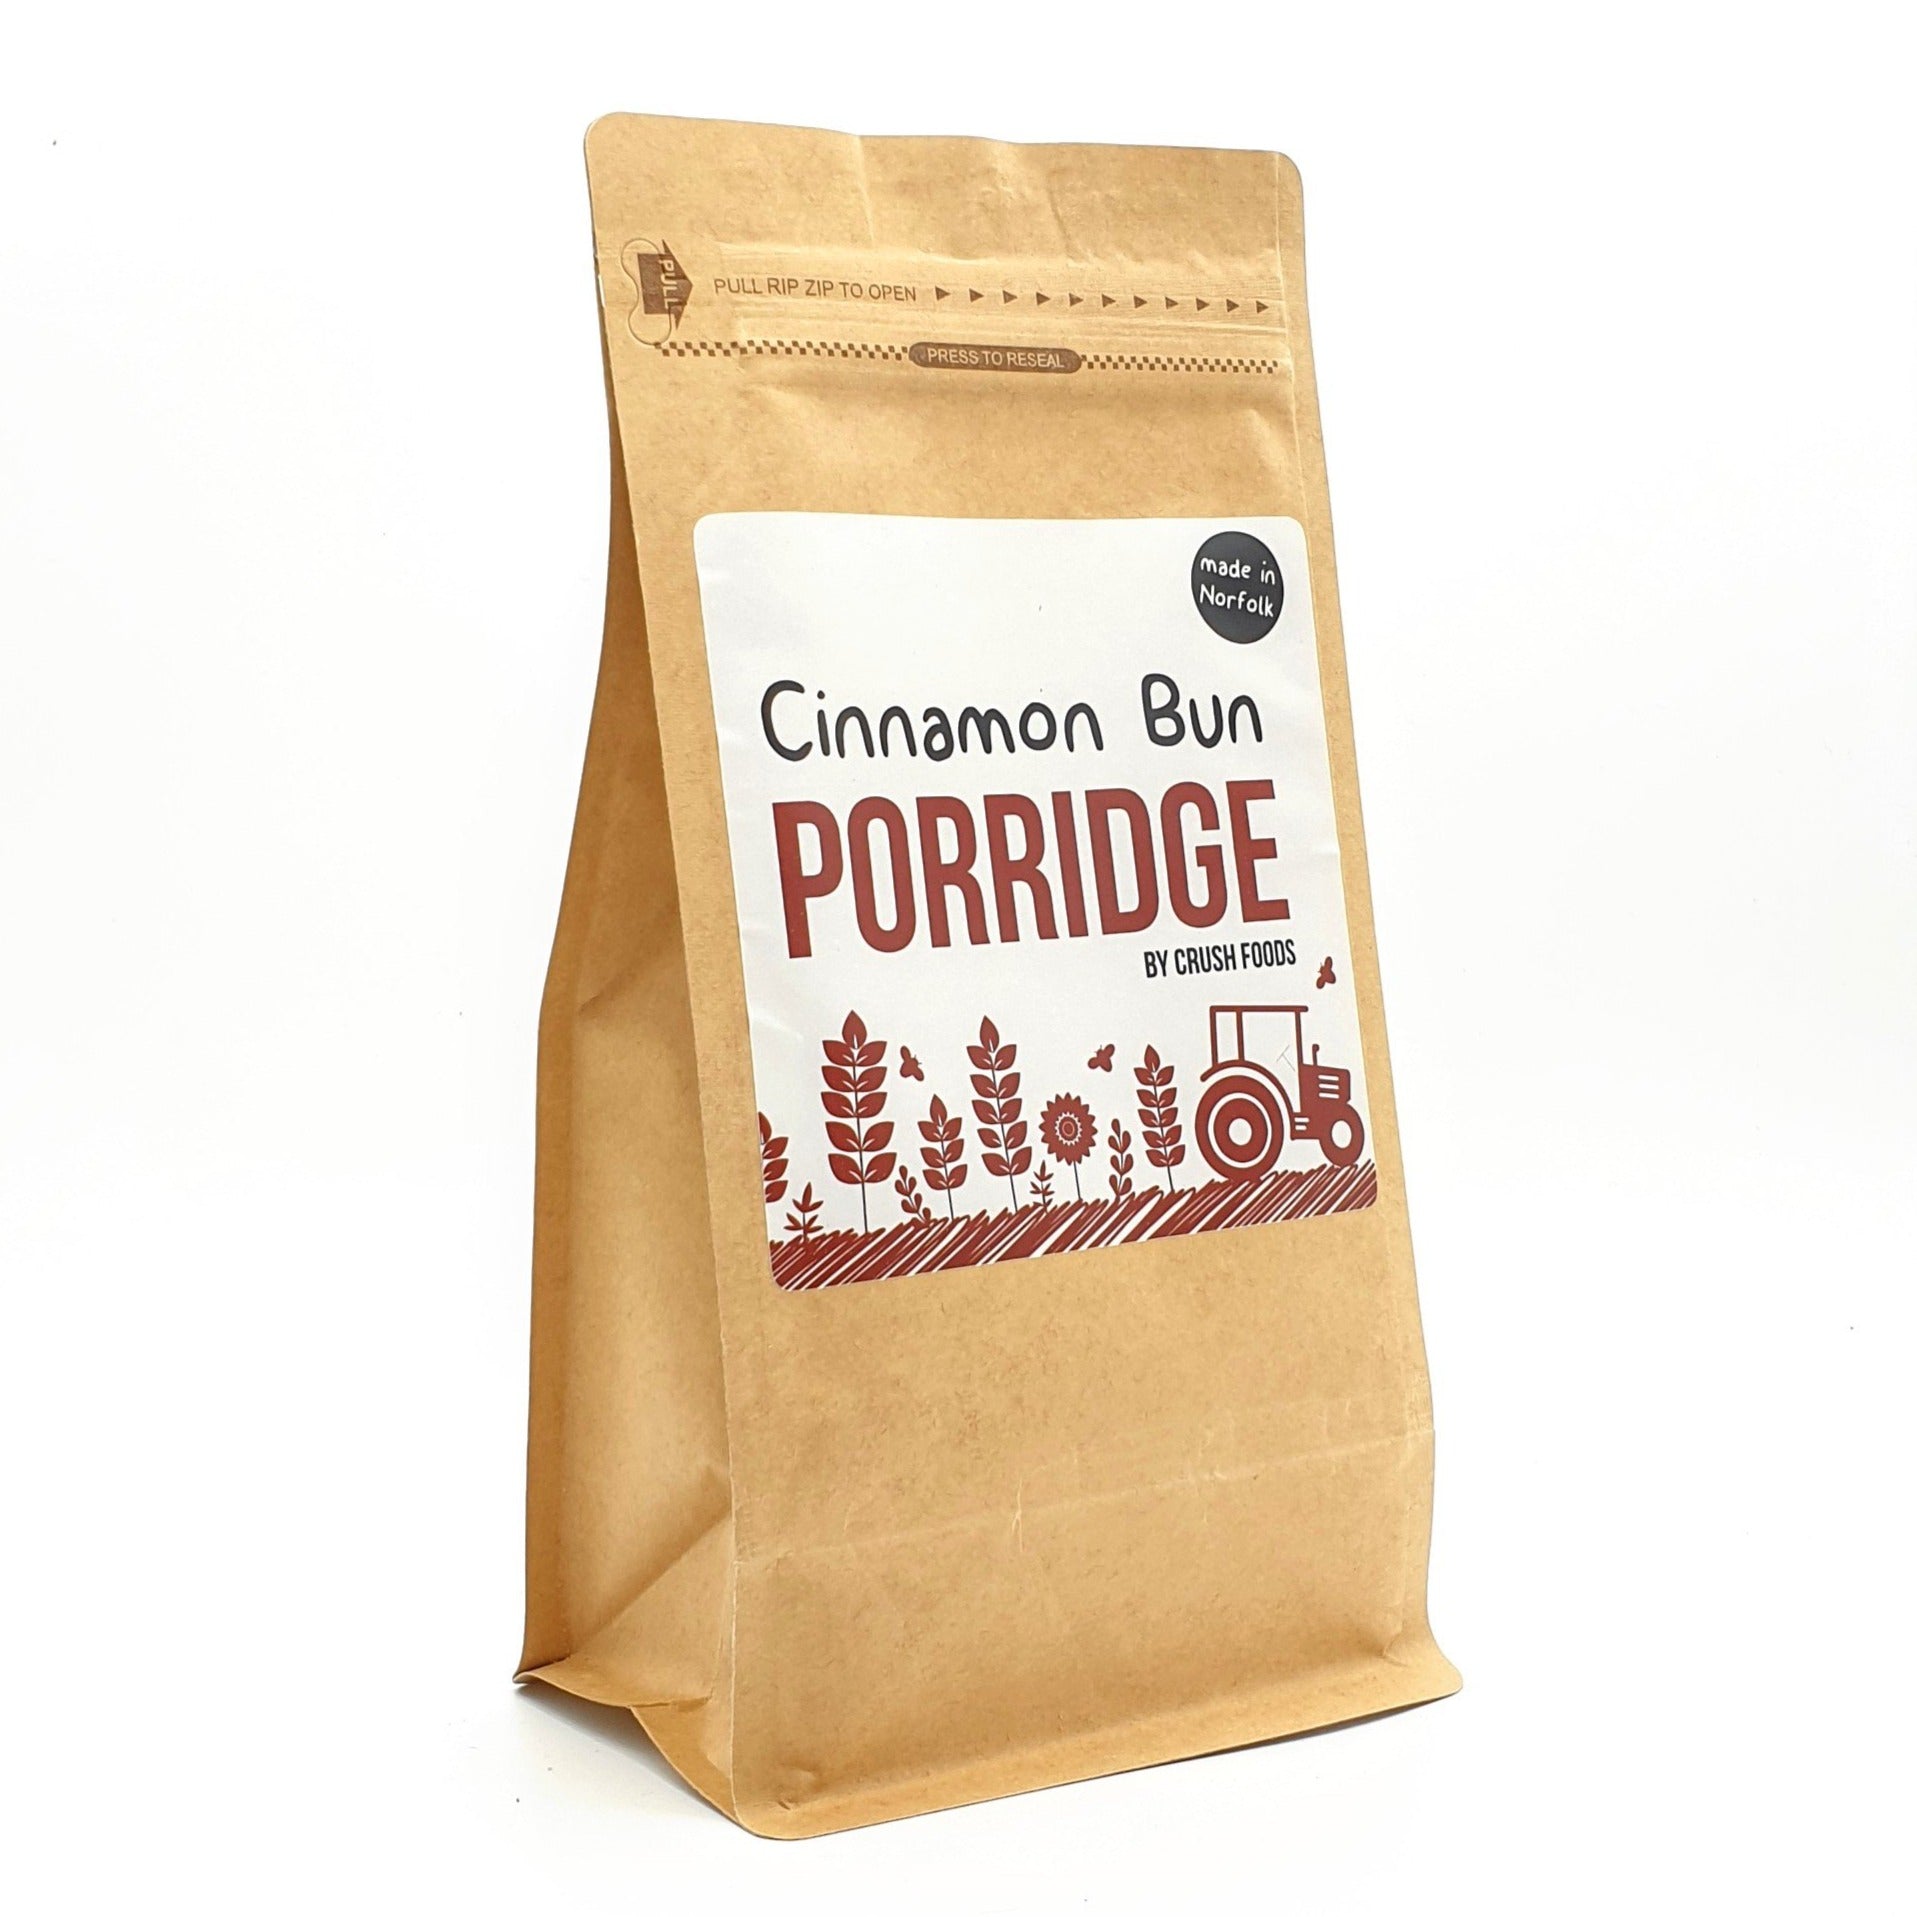 Cinnamon Bun Porridge